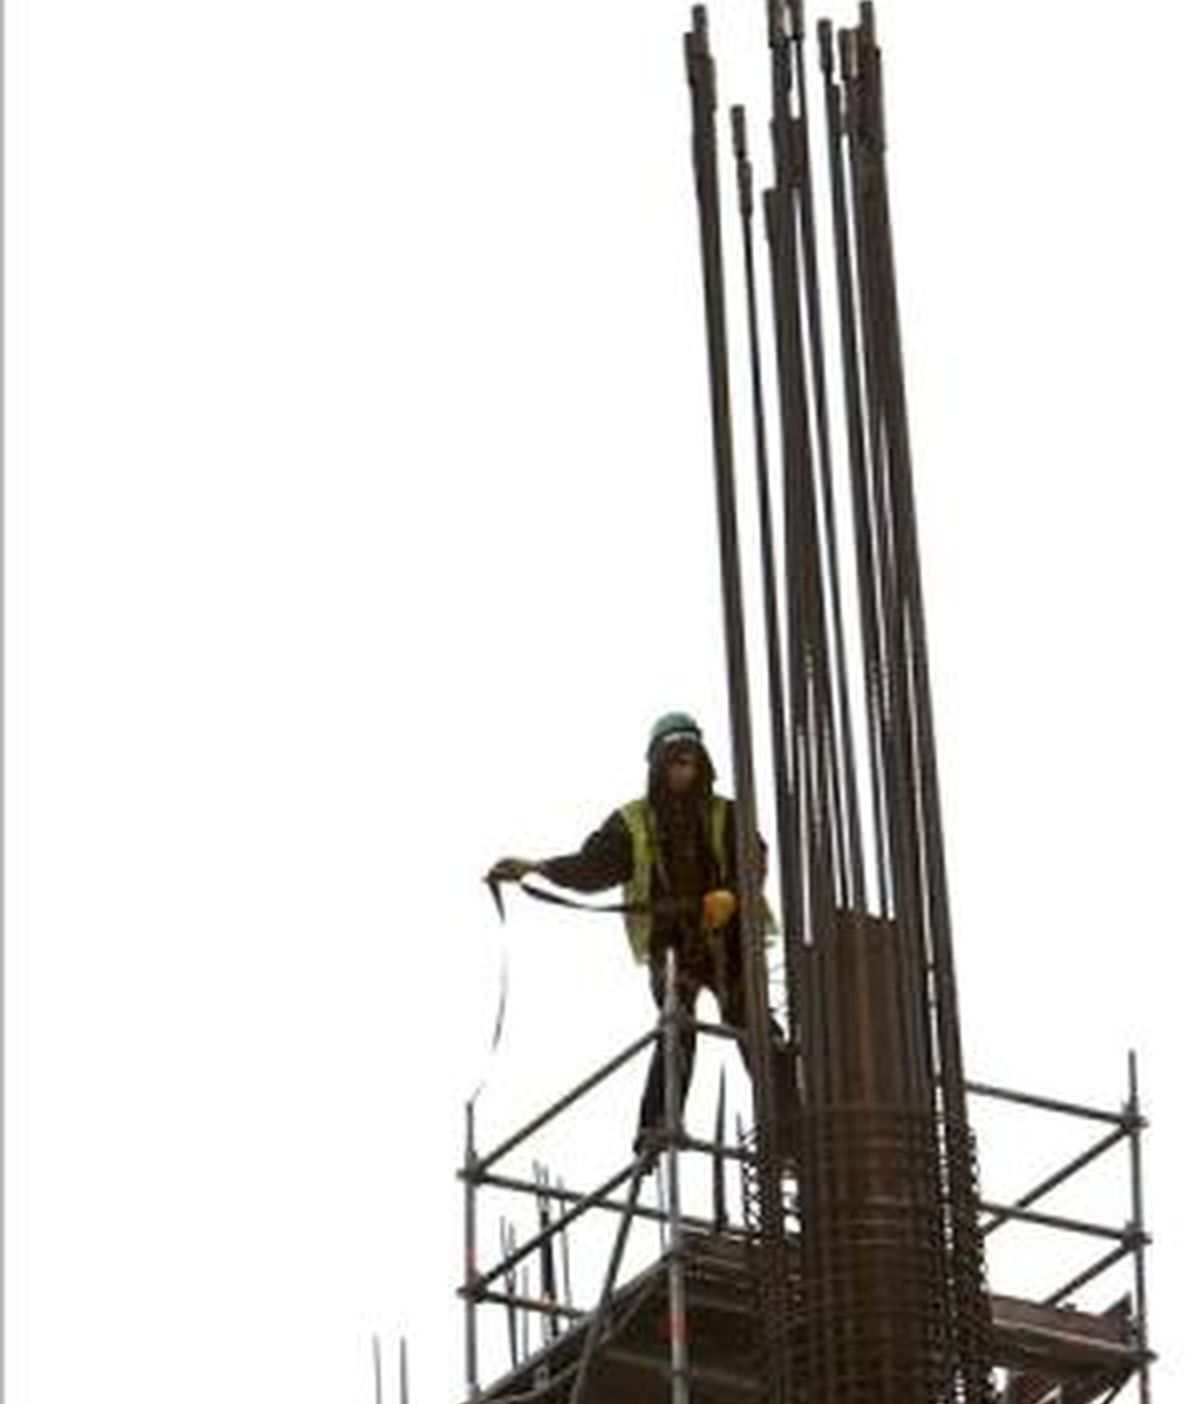 Un trabajador de la construcción intenta asegurarse con su arnés en una obra. EFE/Archivo